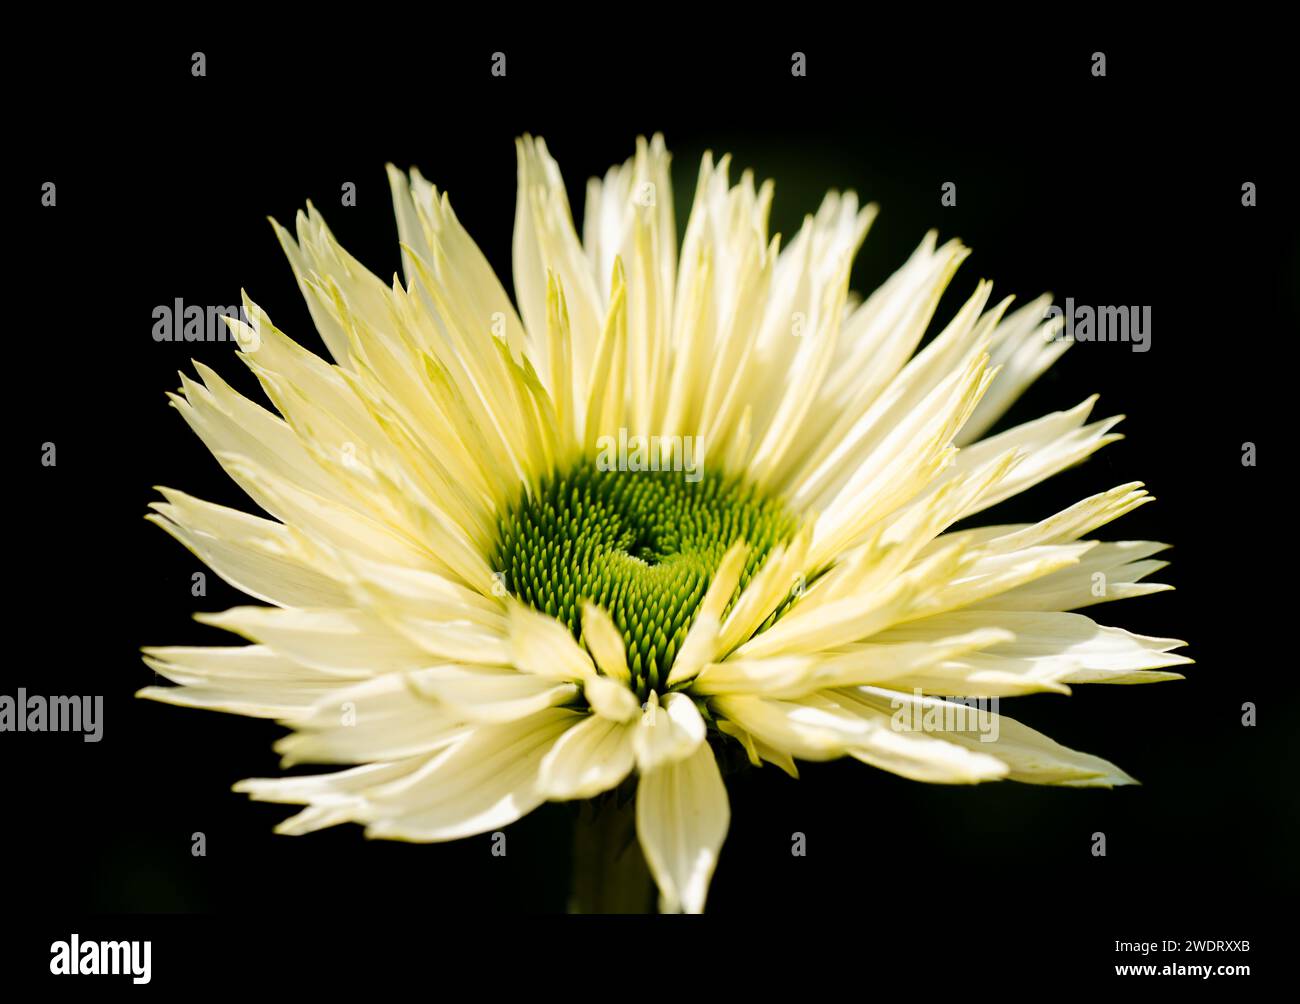 Fleur d'un chrysanthème jaune sur fond noir. Gros plan à contraste élevé de la plante à fleurs. Banque D'Images